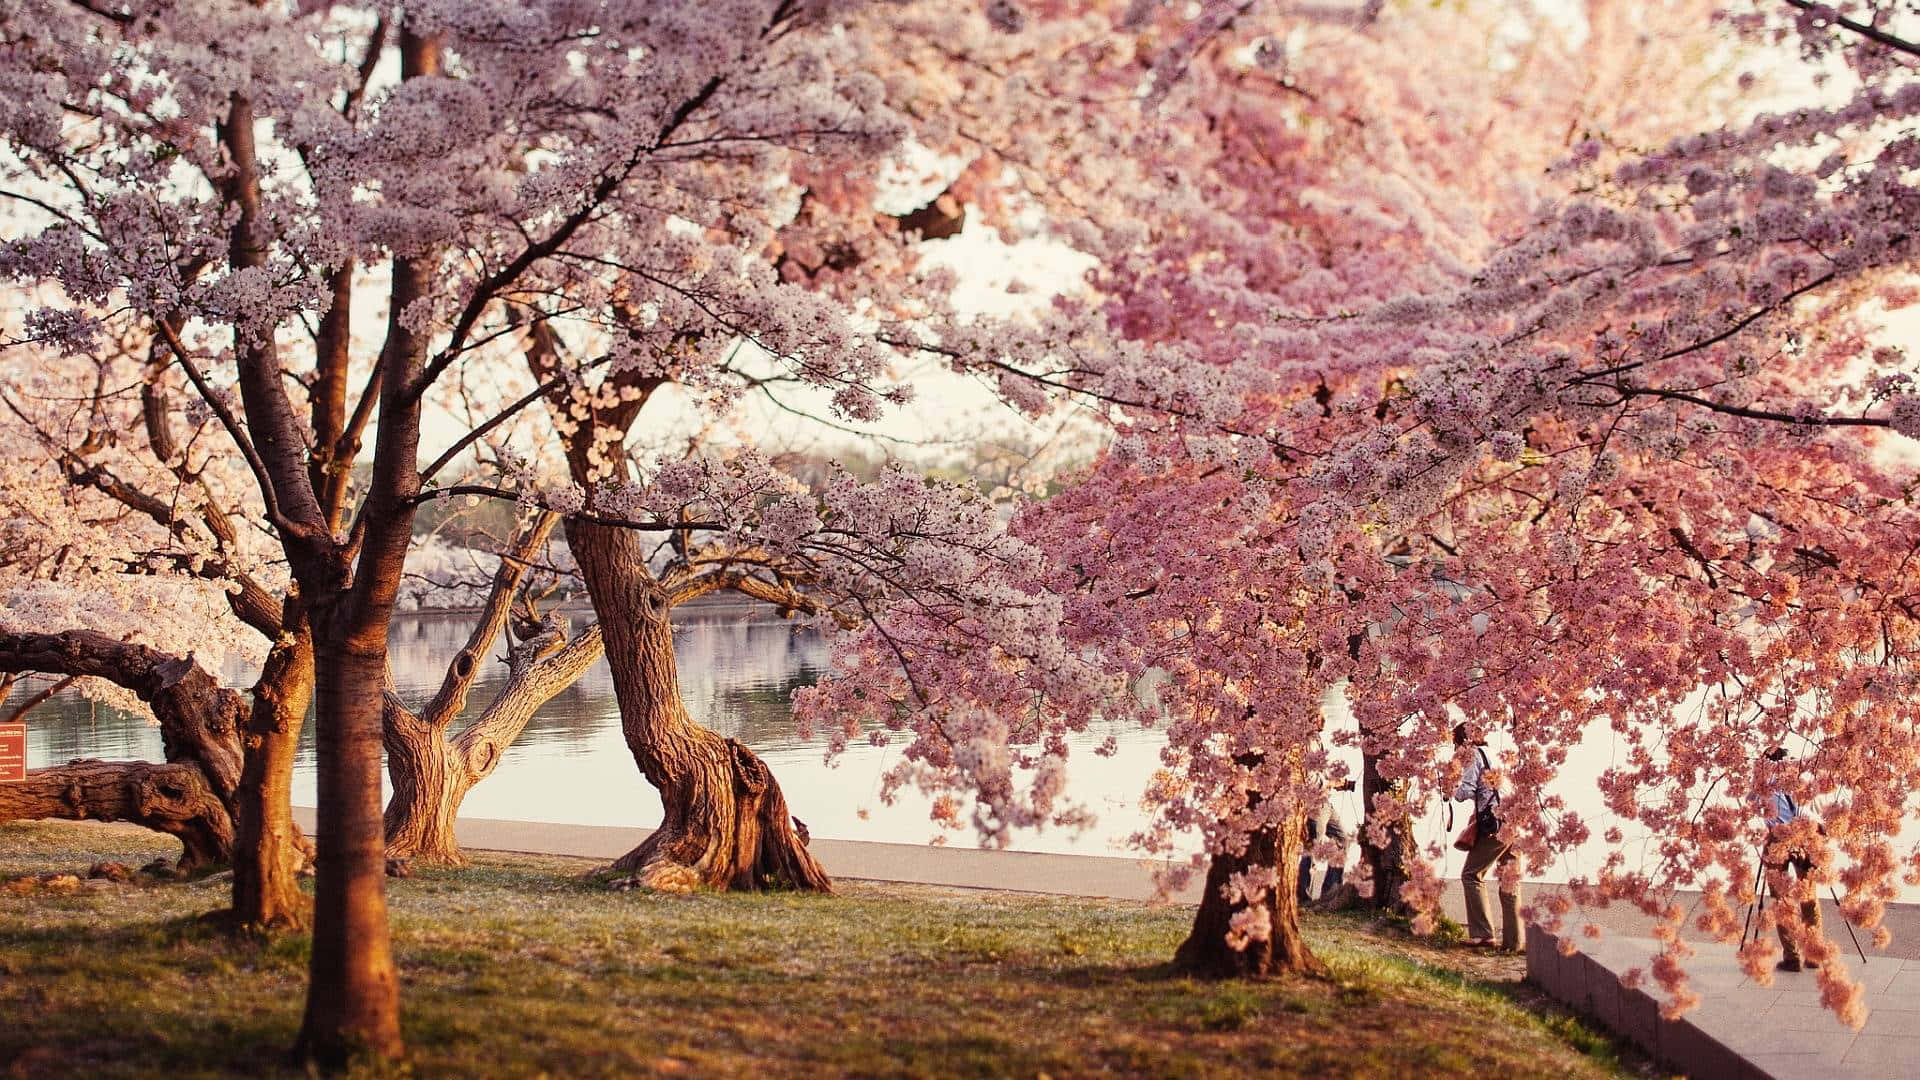 Lastagione Dei Fiori Di Ciliegio È Arrivata, Goditi La Bellezza Di Un Albero Di Sakura In Fiore. Sfondo